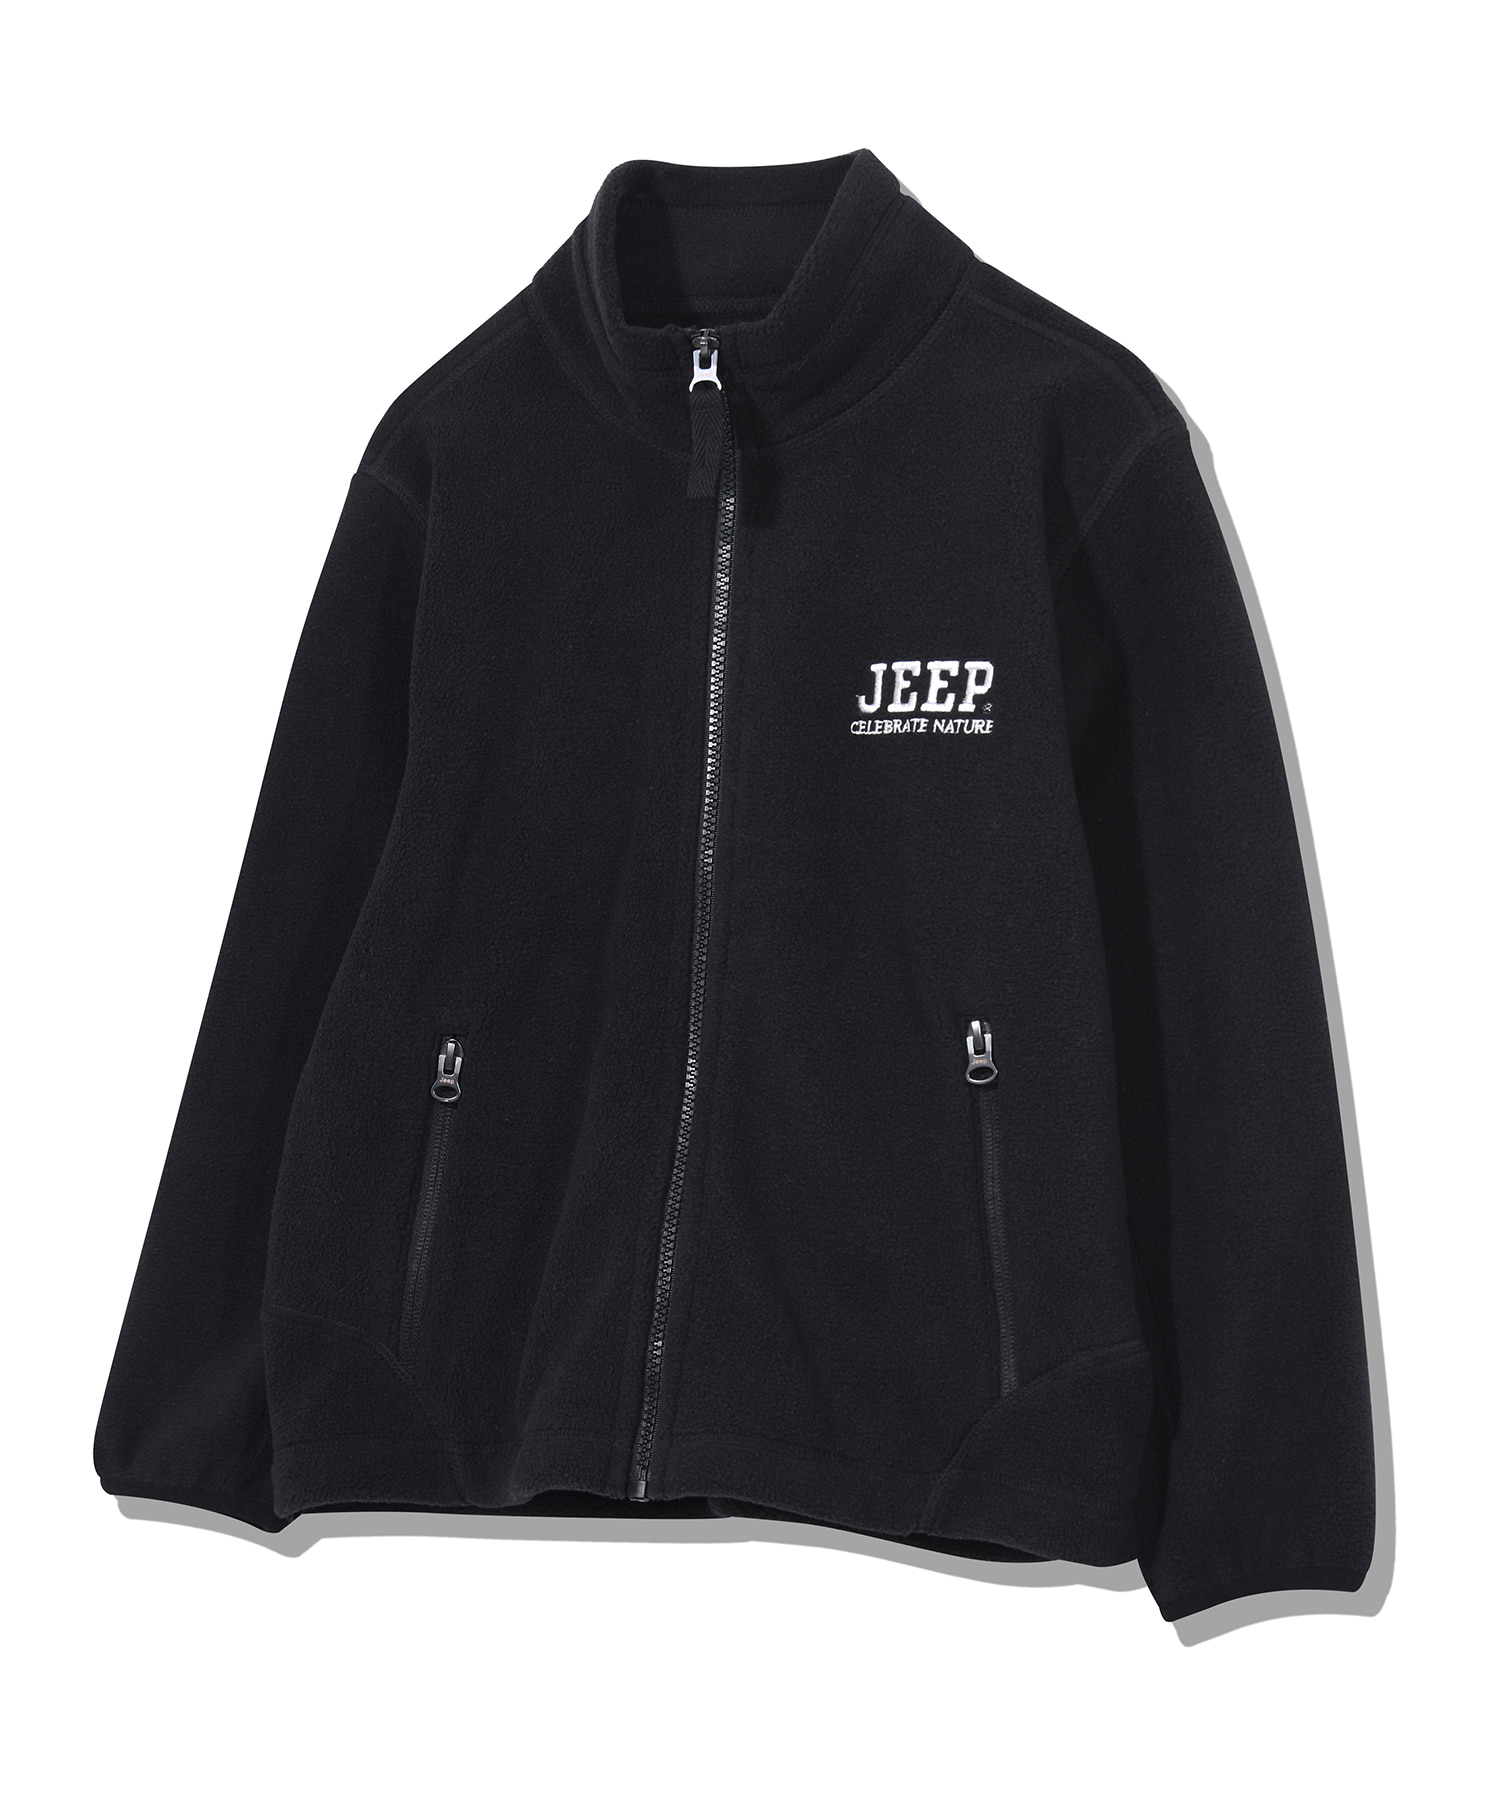 [KIDS]Capital Jeep Fleece Zip-Up  (KO4TZU181BK)